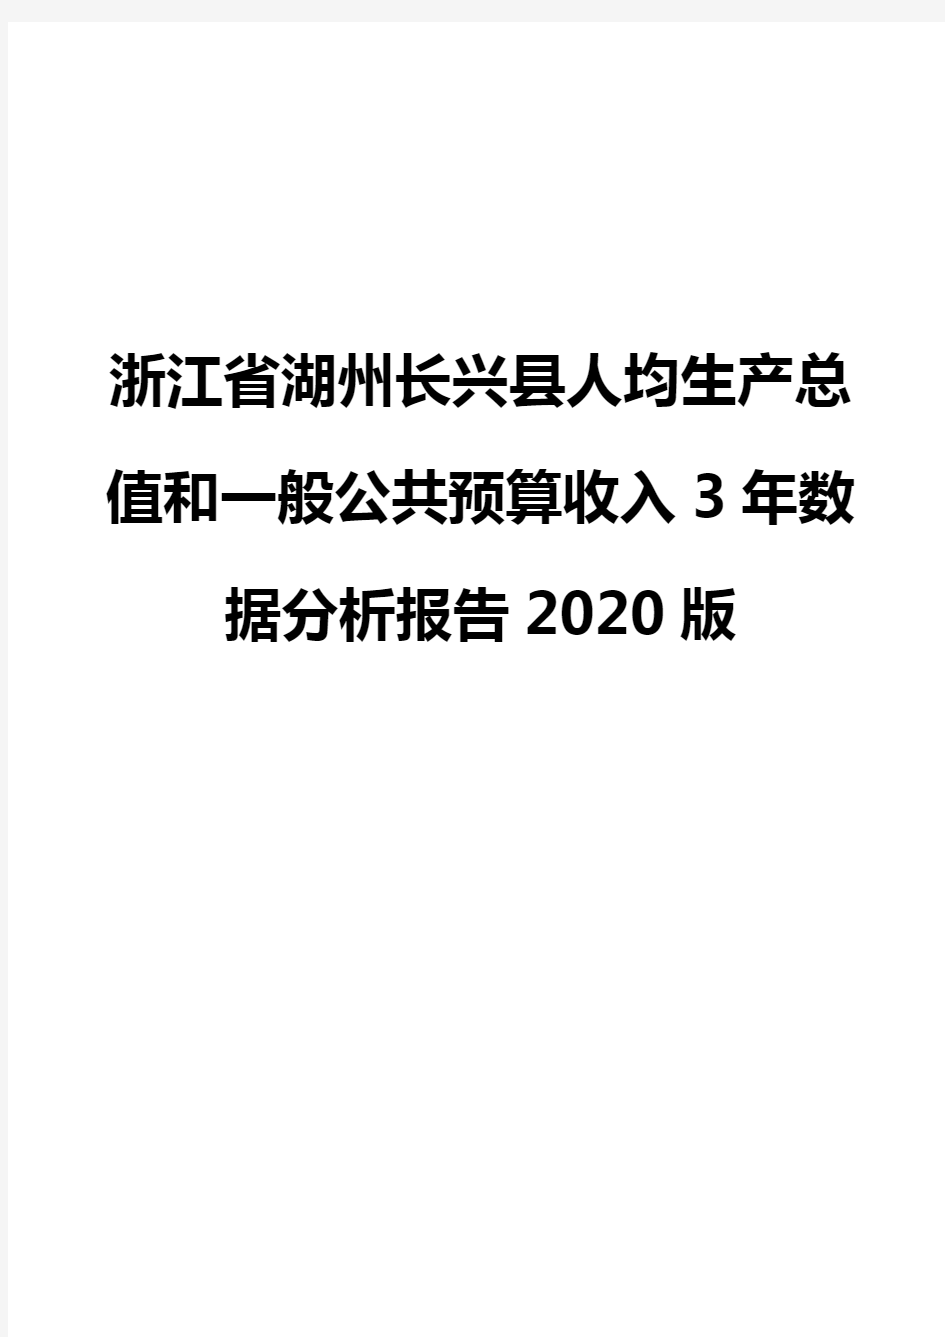 浙江省湖州长兴县人均生产总值和一般公共预算收入3年数据分析报告2020版